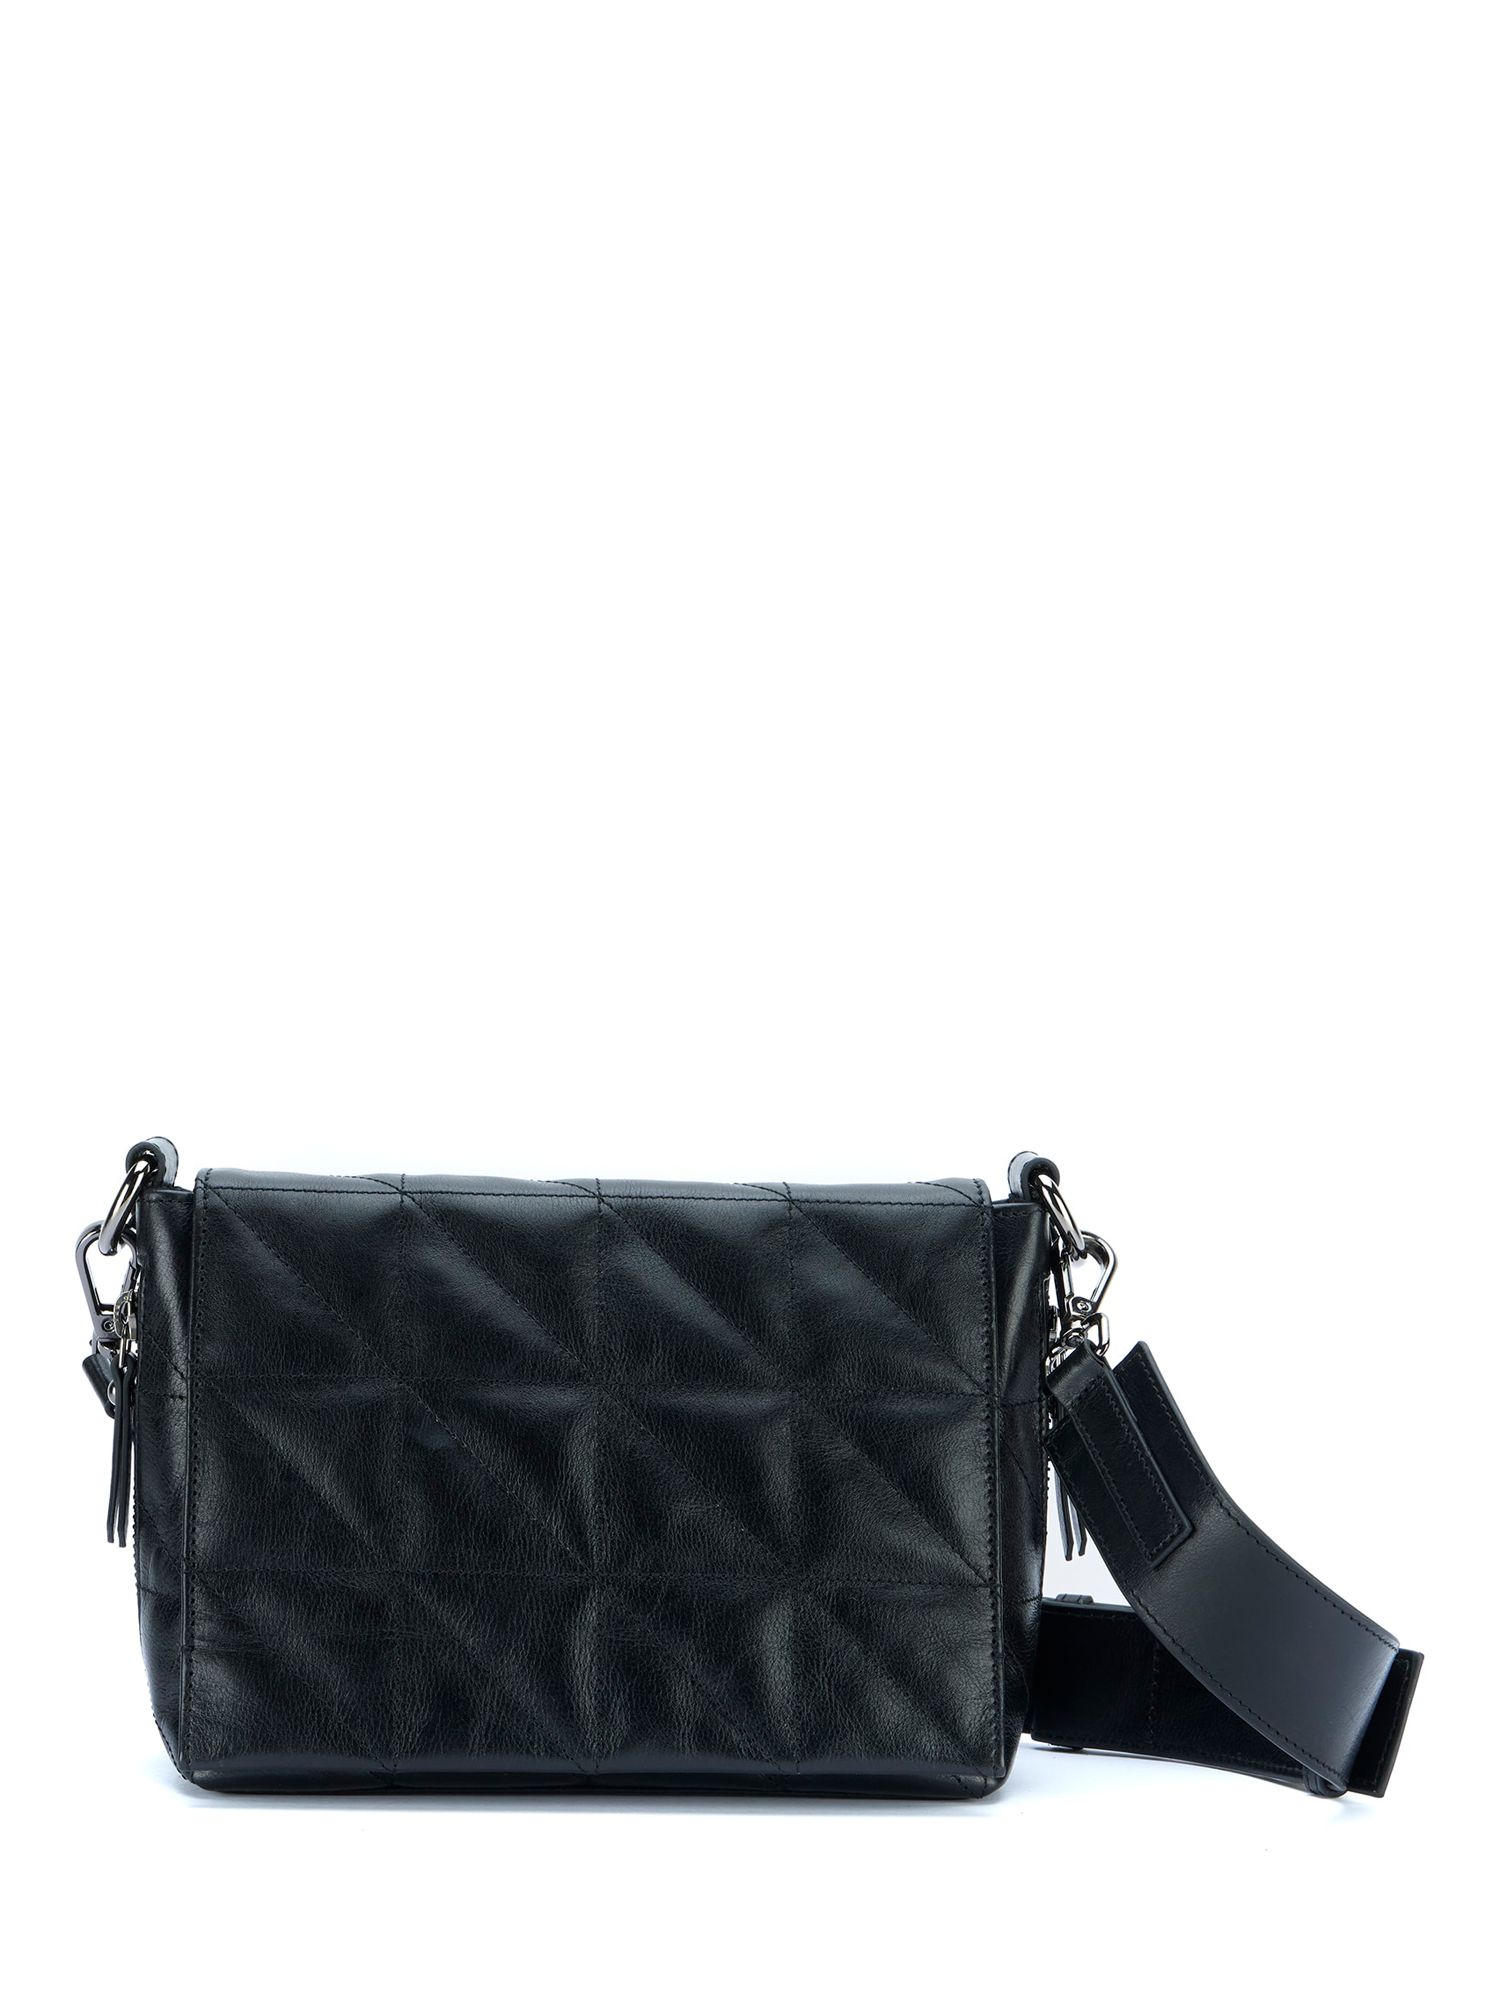 Mint Velvet Quilted Leather Crossbody Bag, Black